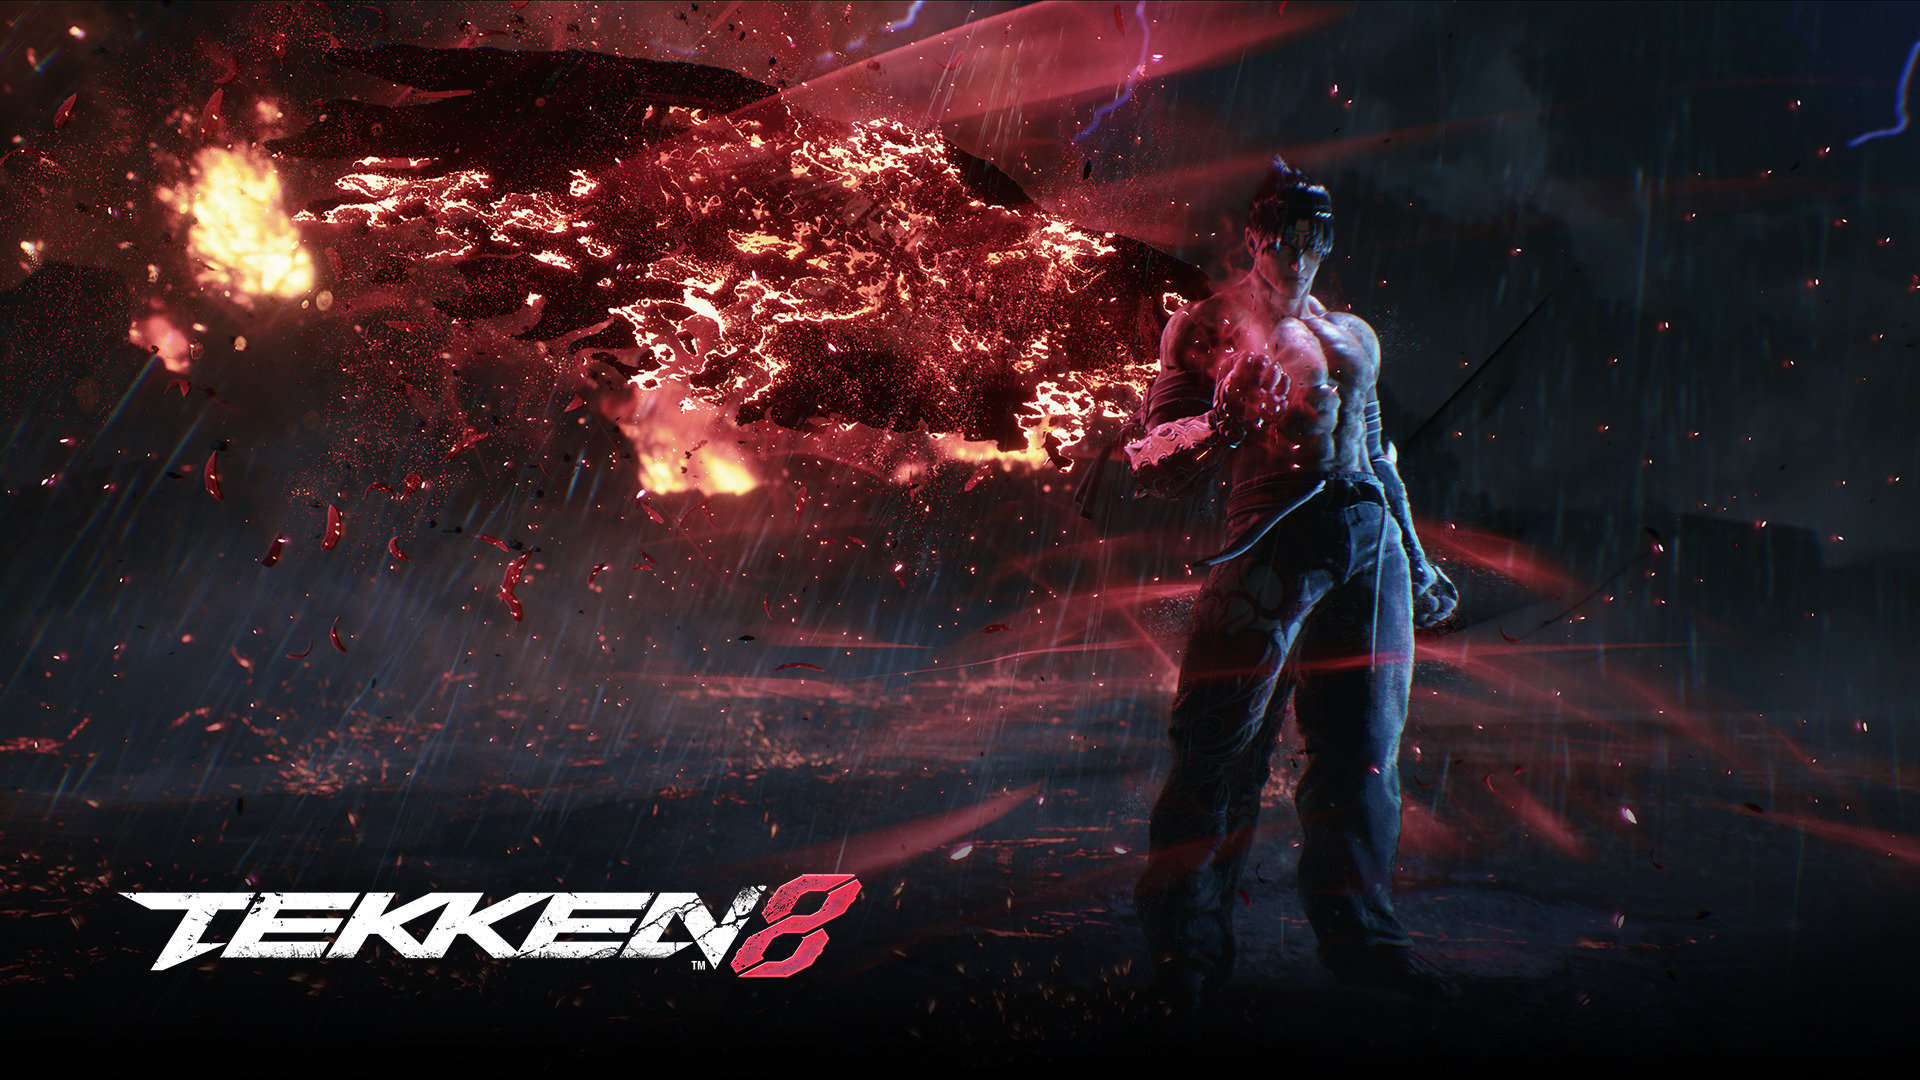 Tekken 6 - Kazuya Mishima Ending HD 